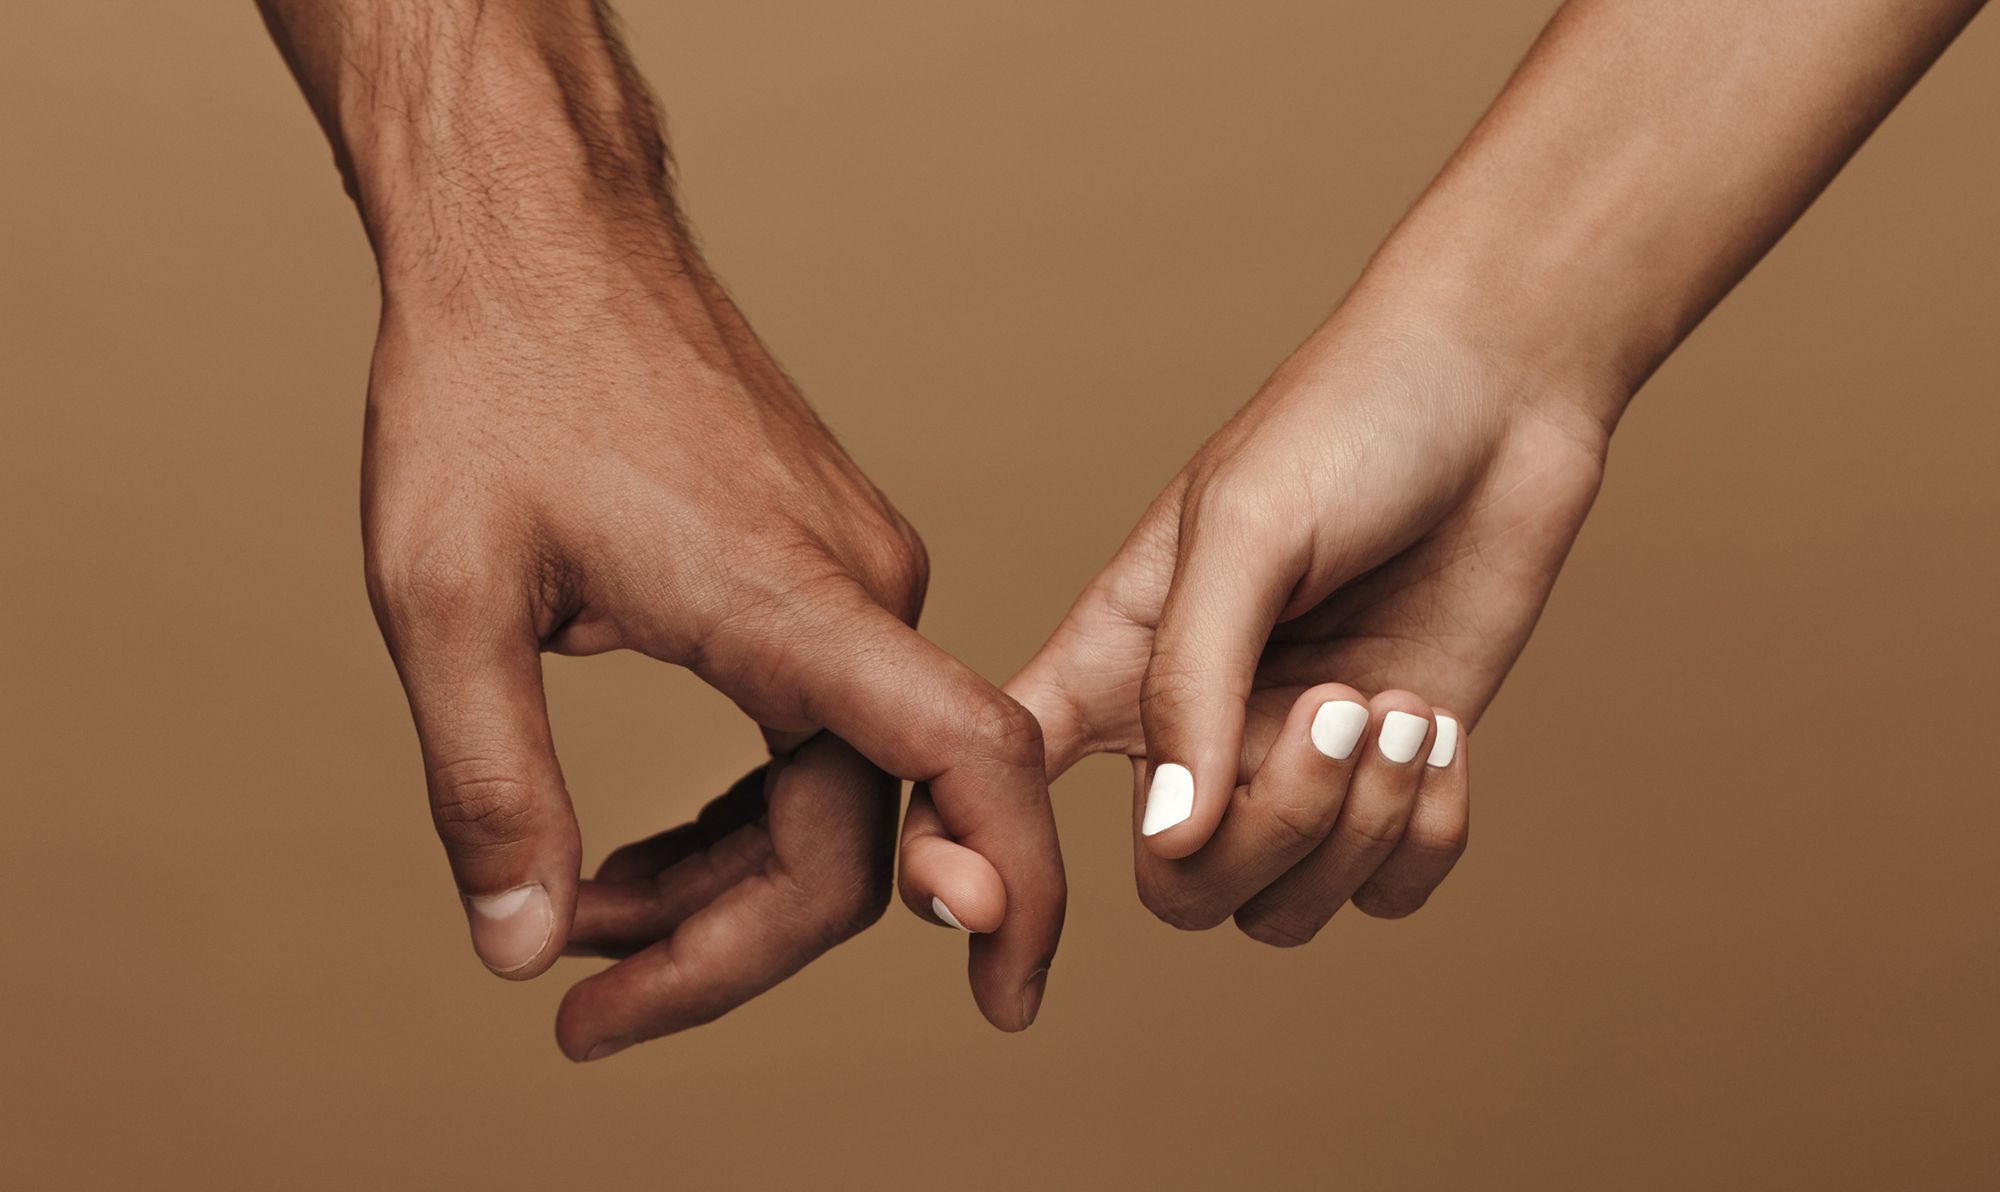 Liebeskummer ohne Beziehung - Abbildung einer männlichen und einer weiblichen Hand, die Zeigefinger sind einander eingehakt- 